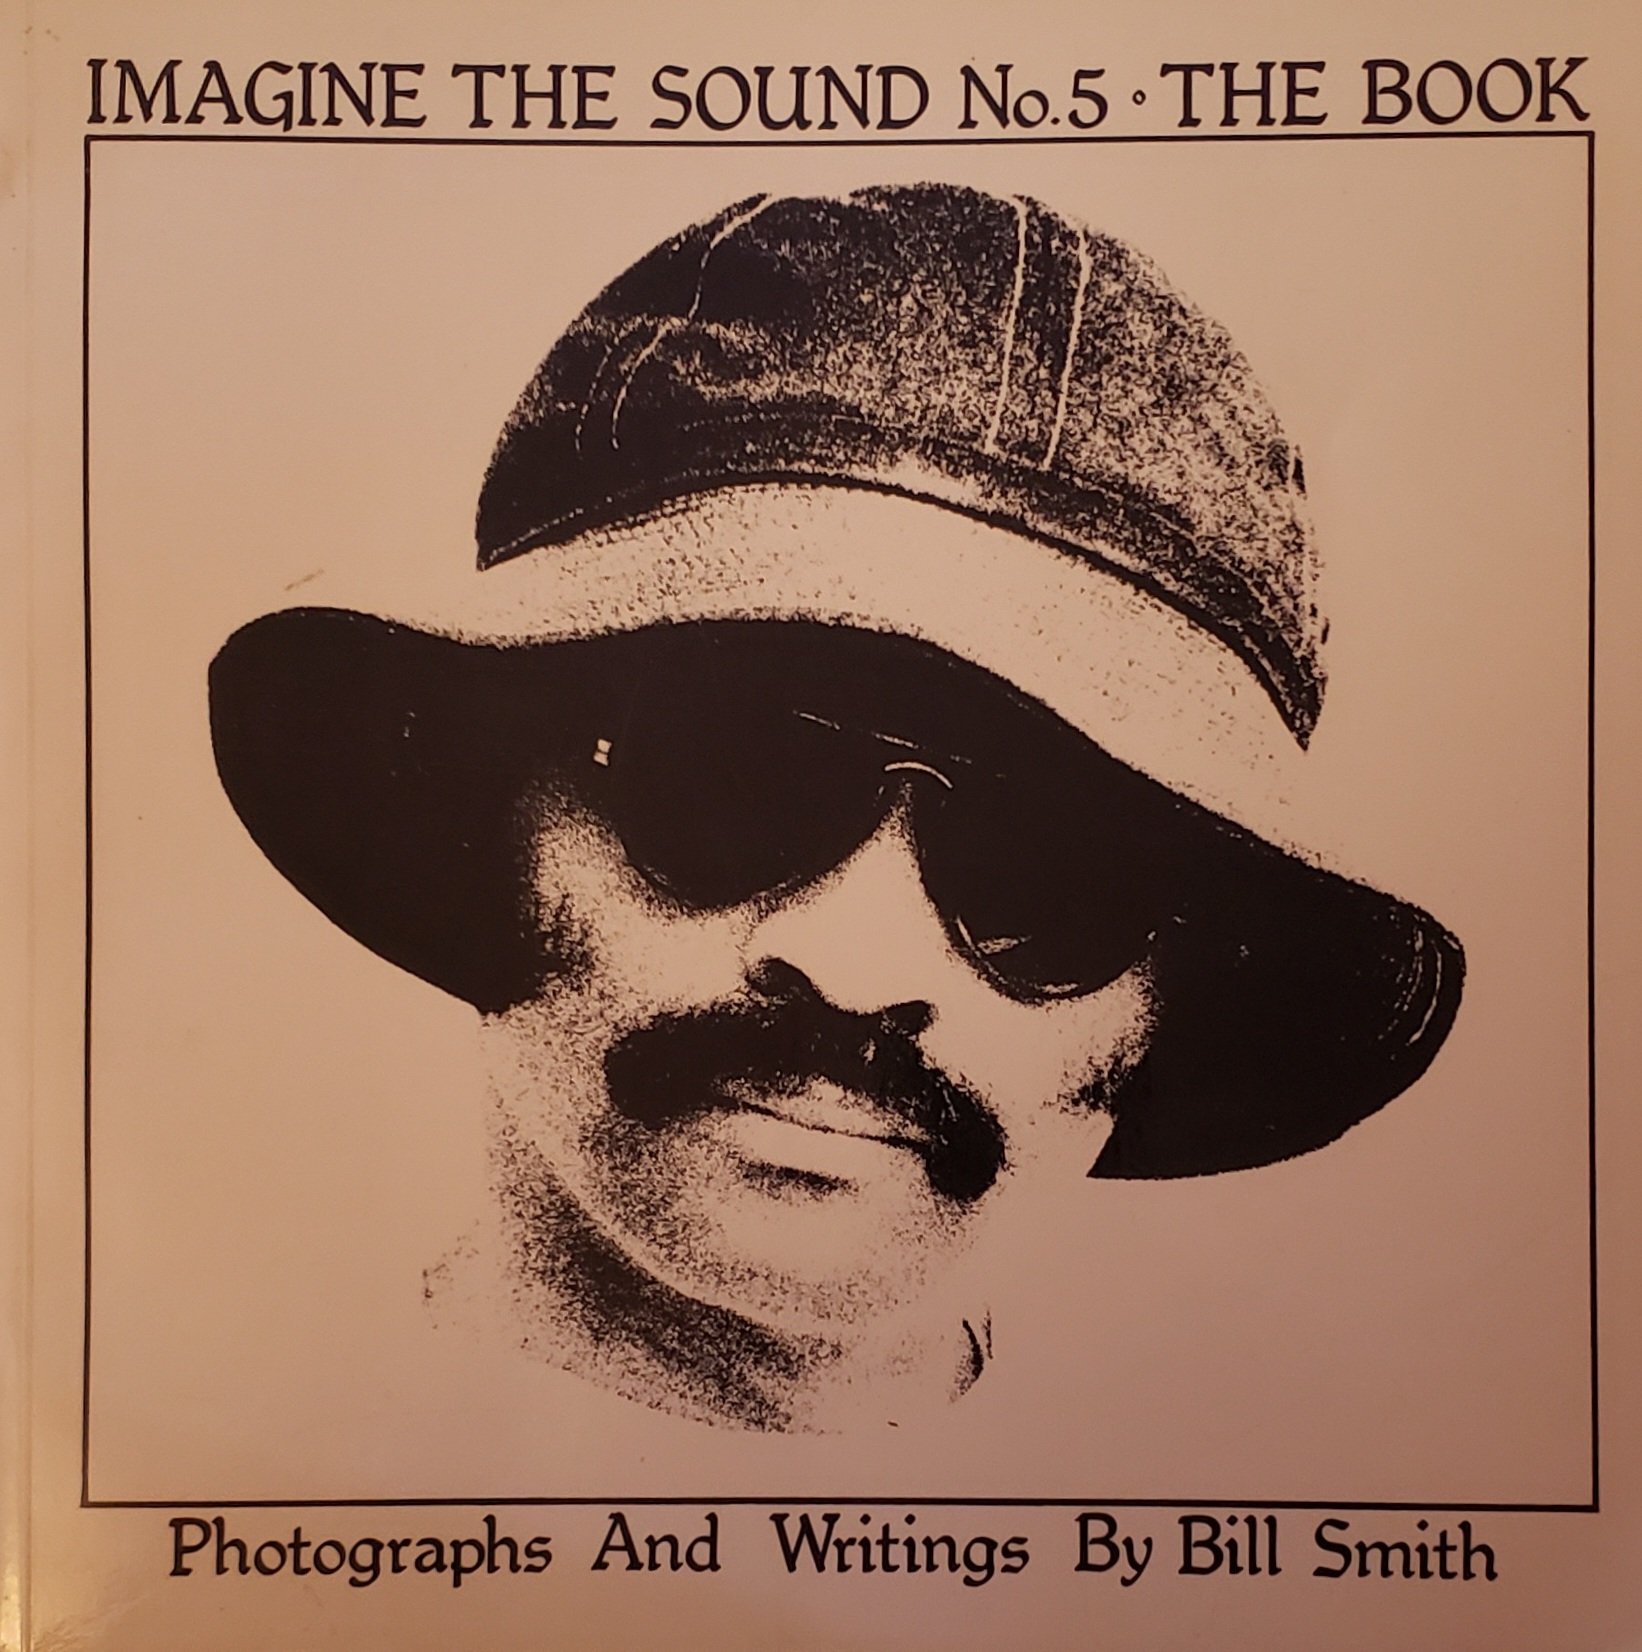 Imagine the sound book cover